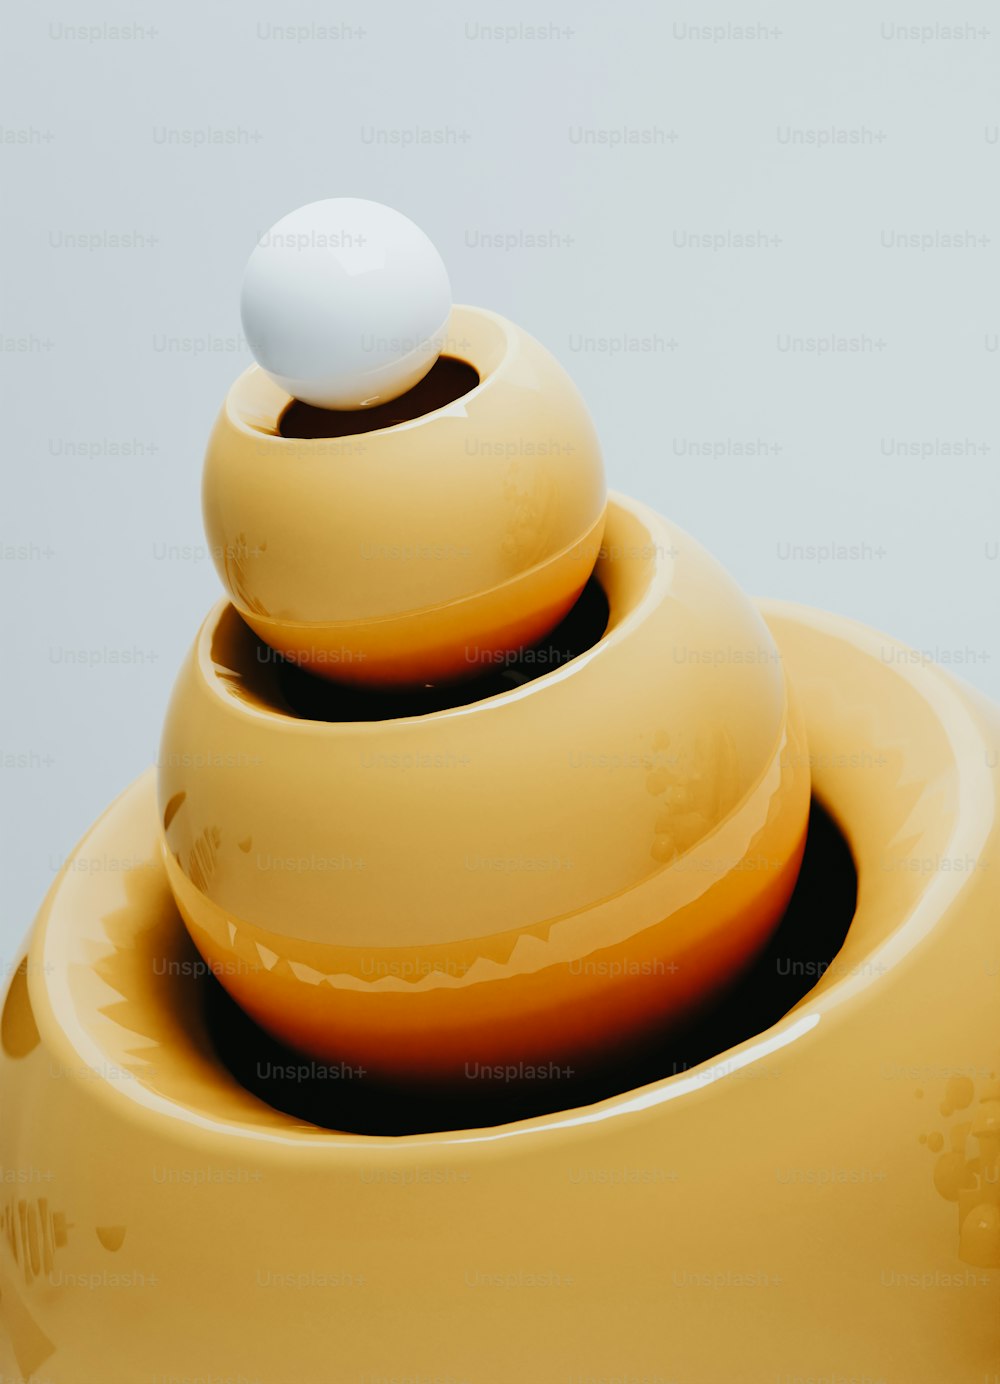 un jarrón amarillo con una bola blanca encima